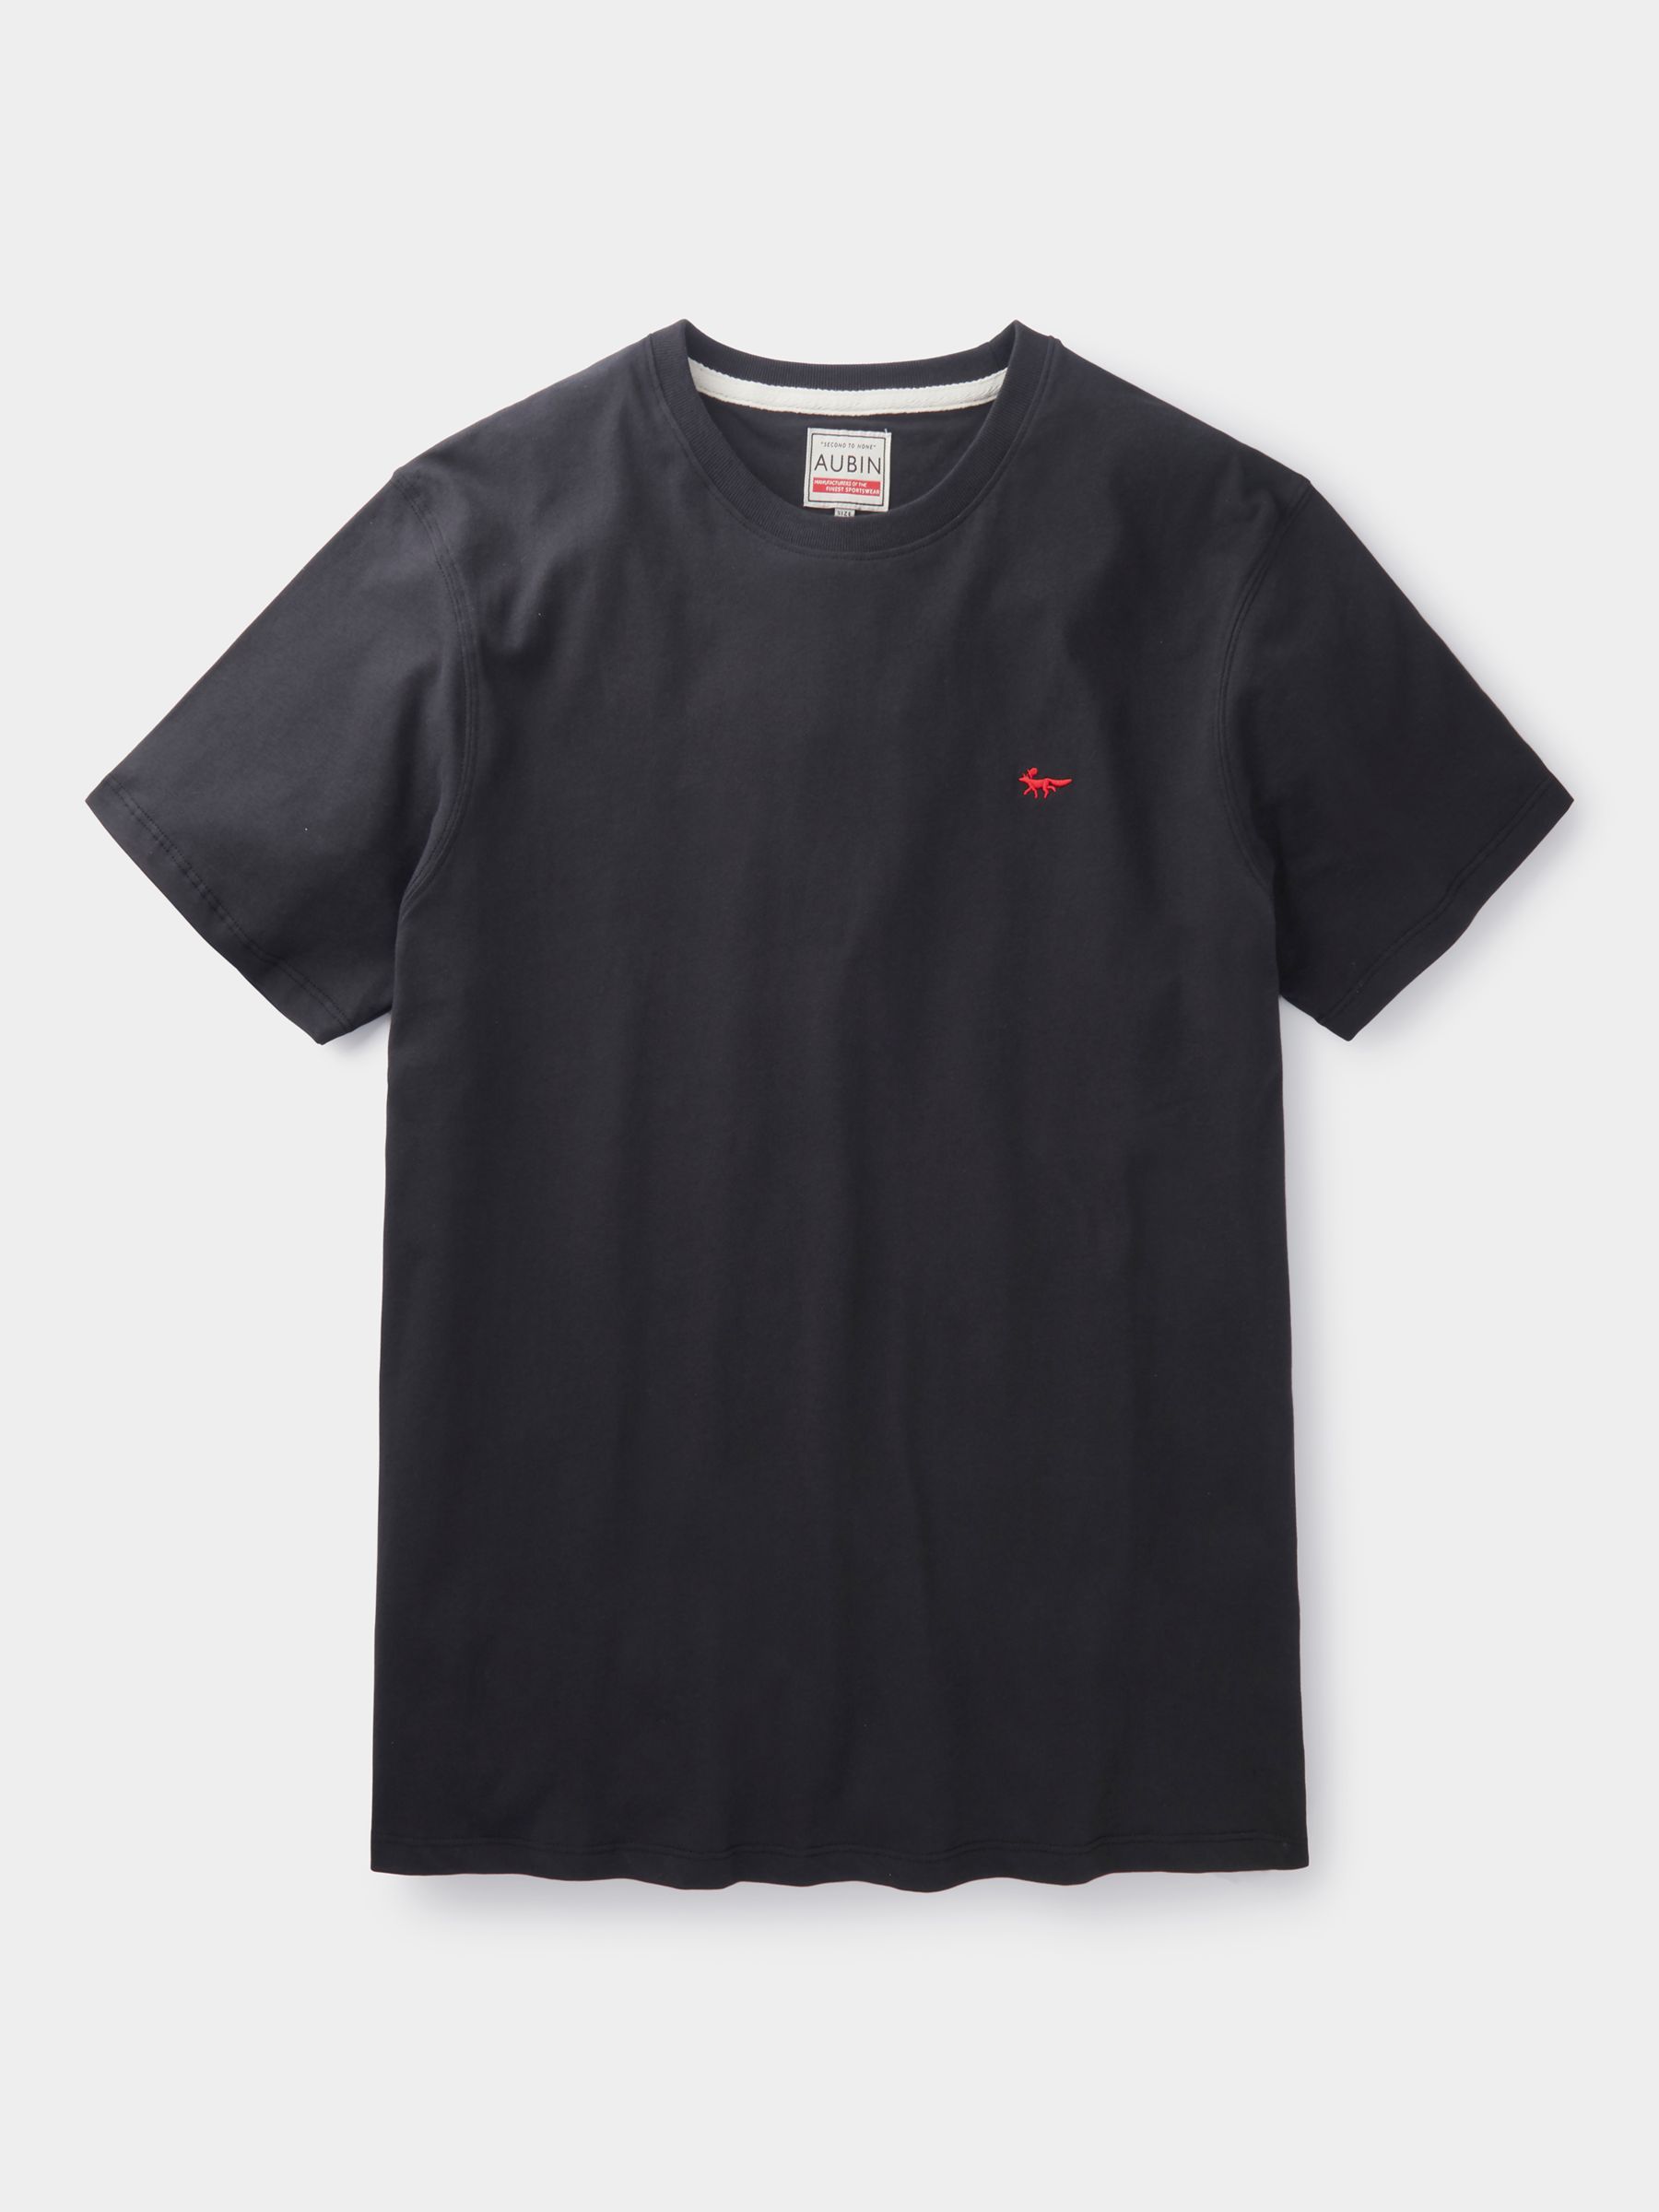 Aubin Logo Cotton T-shirt, Black, XS